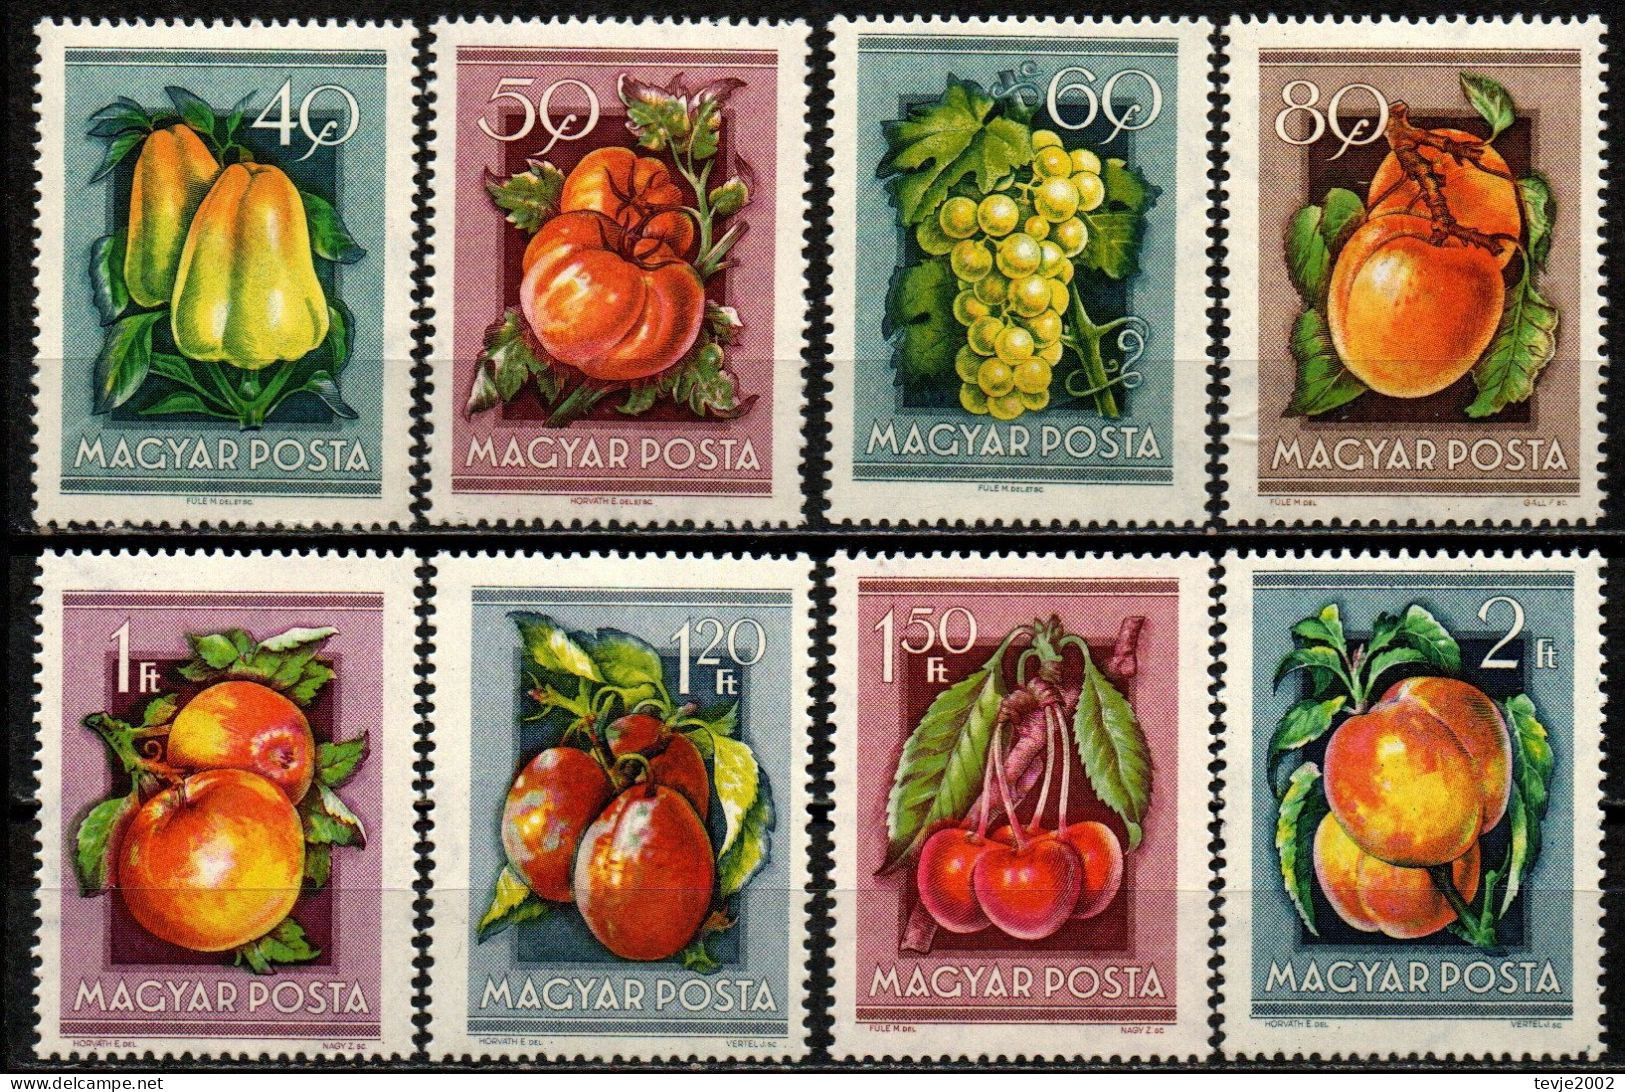 Ungarn 1954 - Mi.Nr. 1387 - 1394 - Postfrisch MNH - Früchte Obst Fruits - Frutta